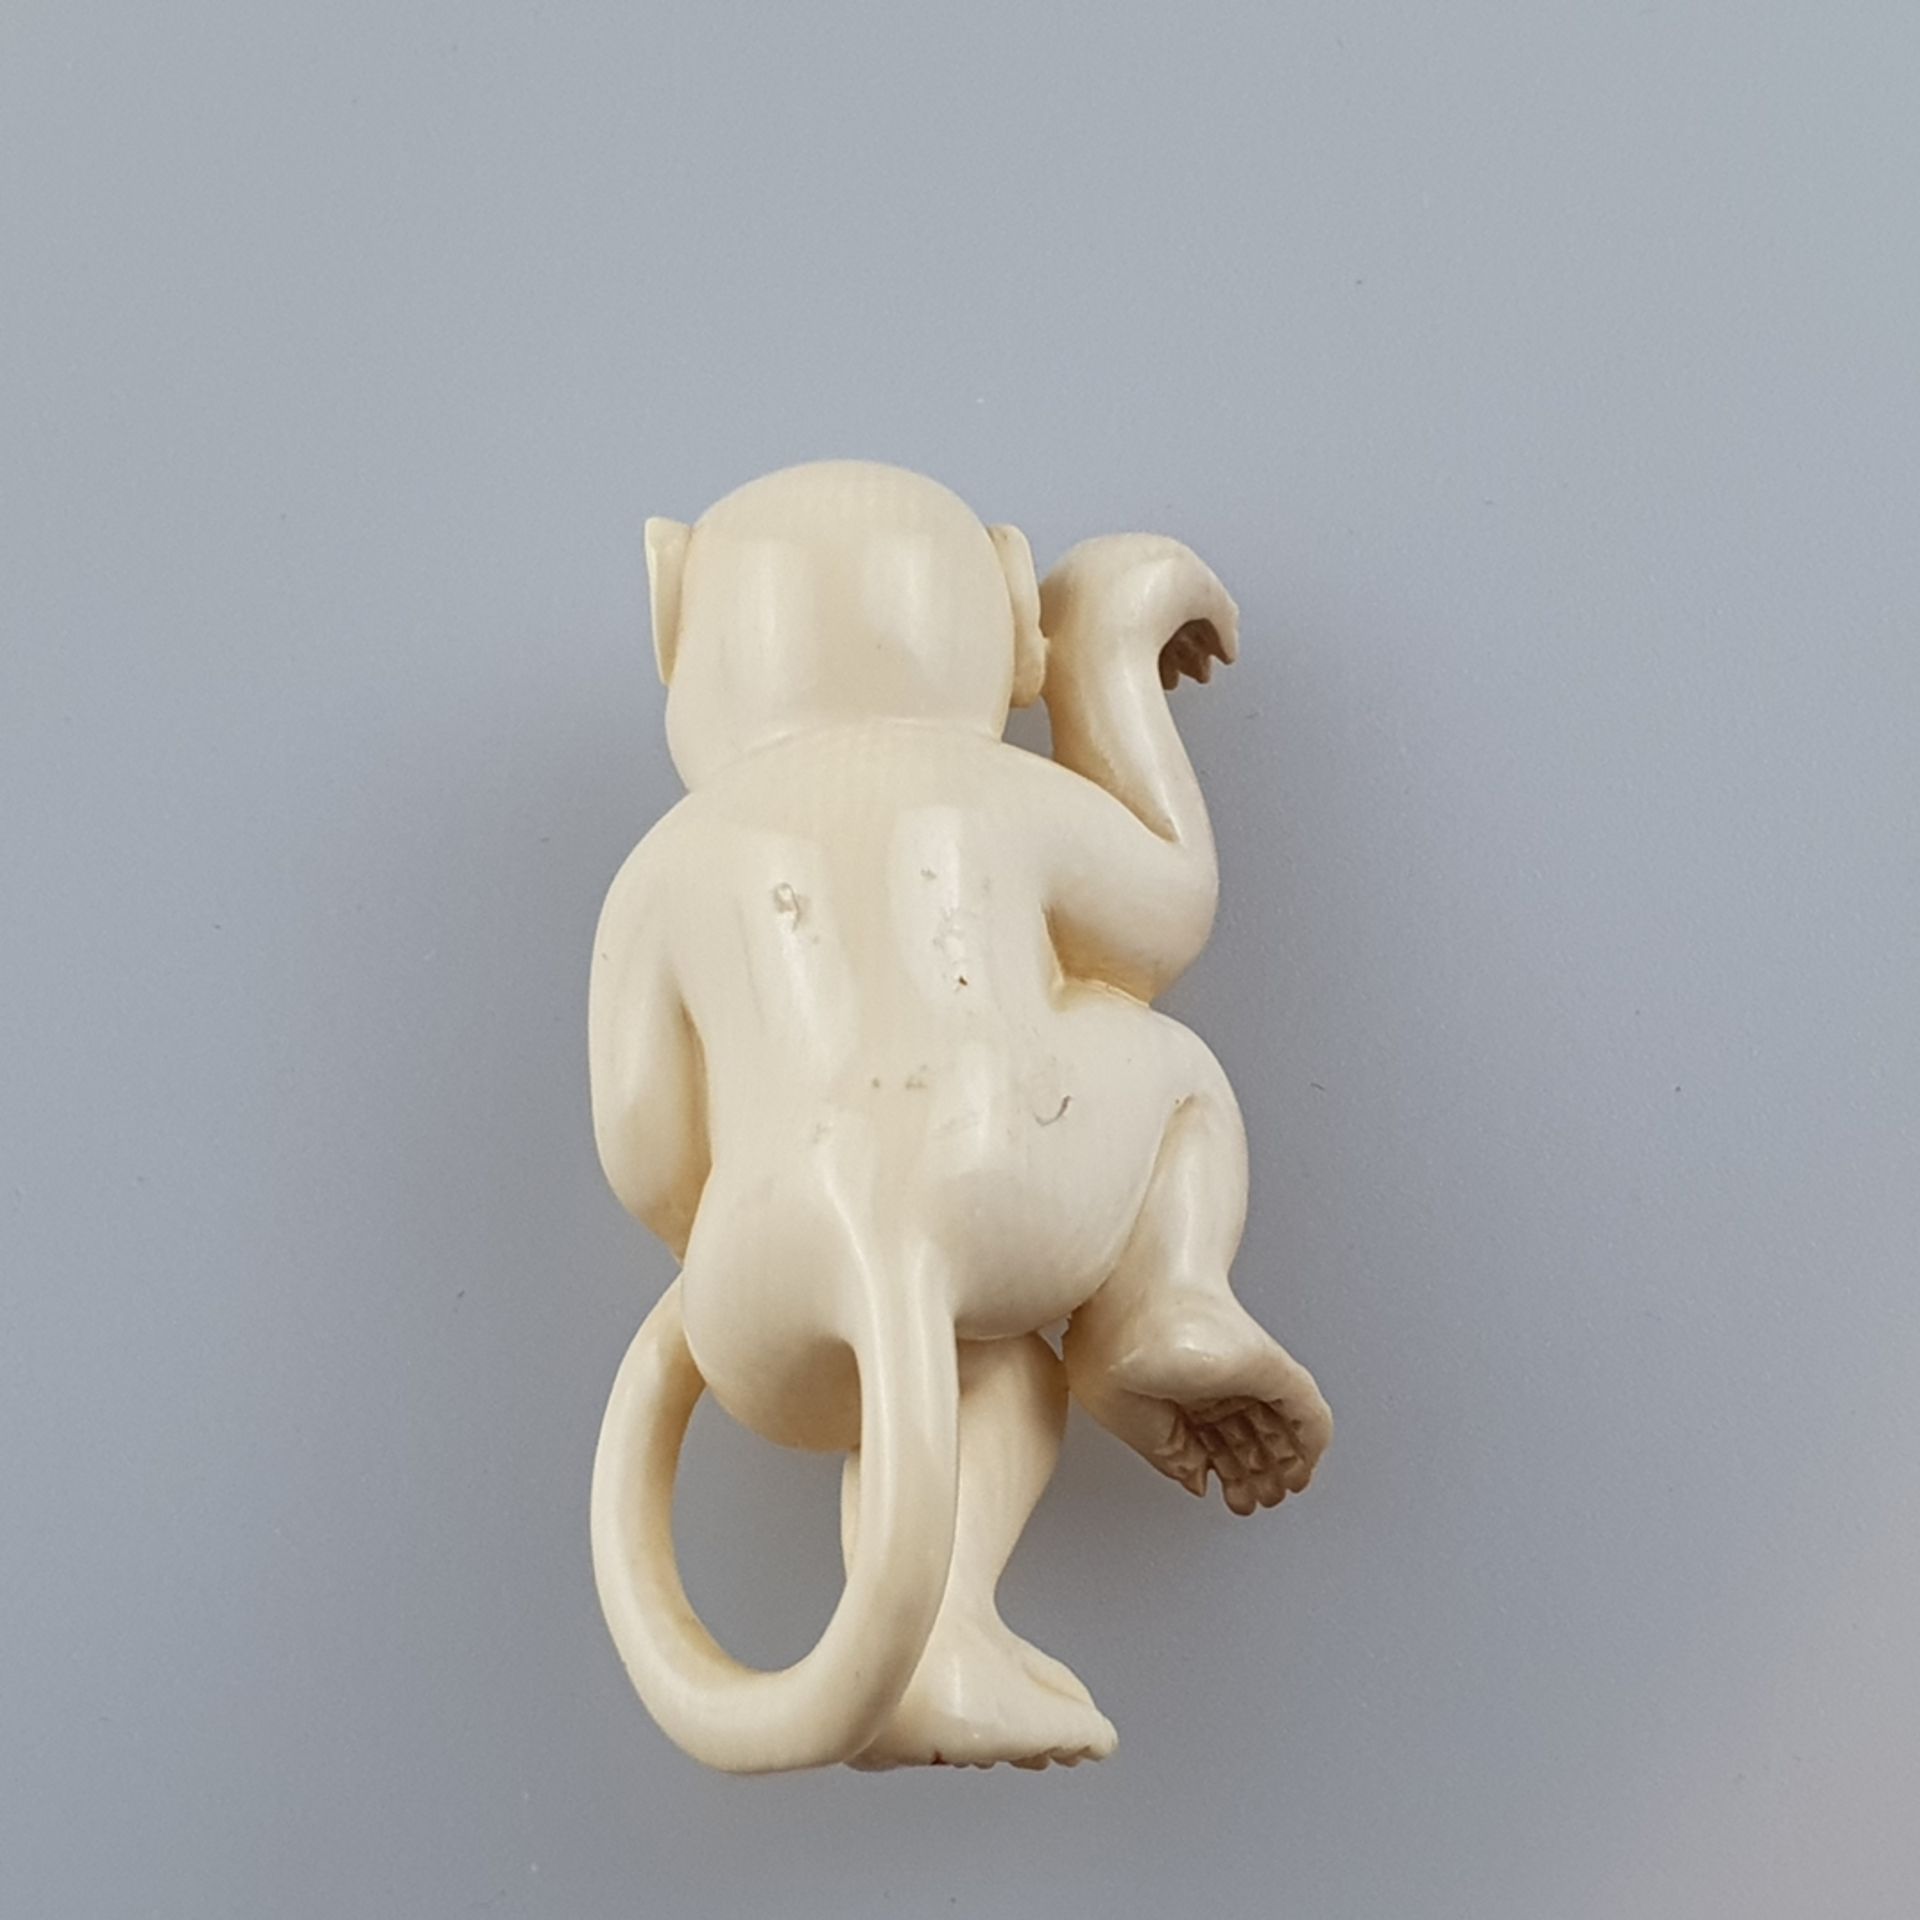 Katabori-Netsuke - Tanzender Affe, feine Elfenbein-Schnitzarbeit, dunkel eingelegte Augen, untersei - Bild 5 aus 6